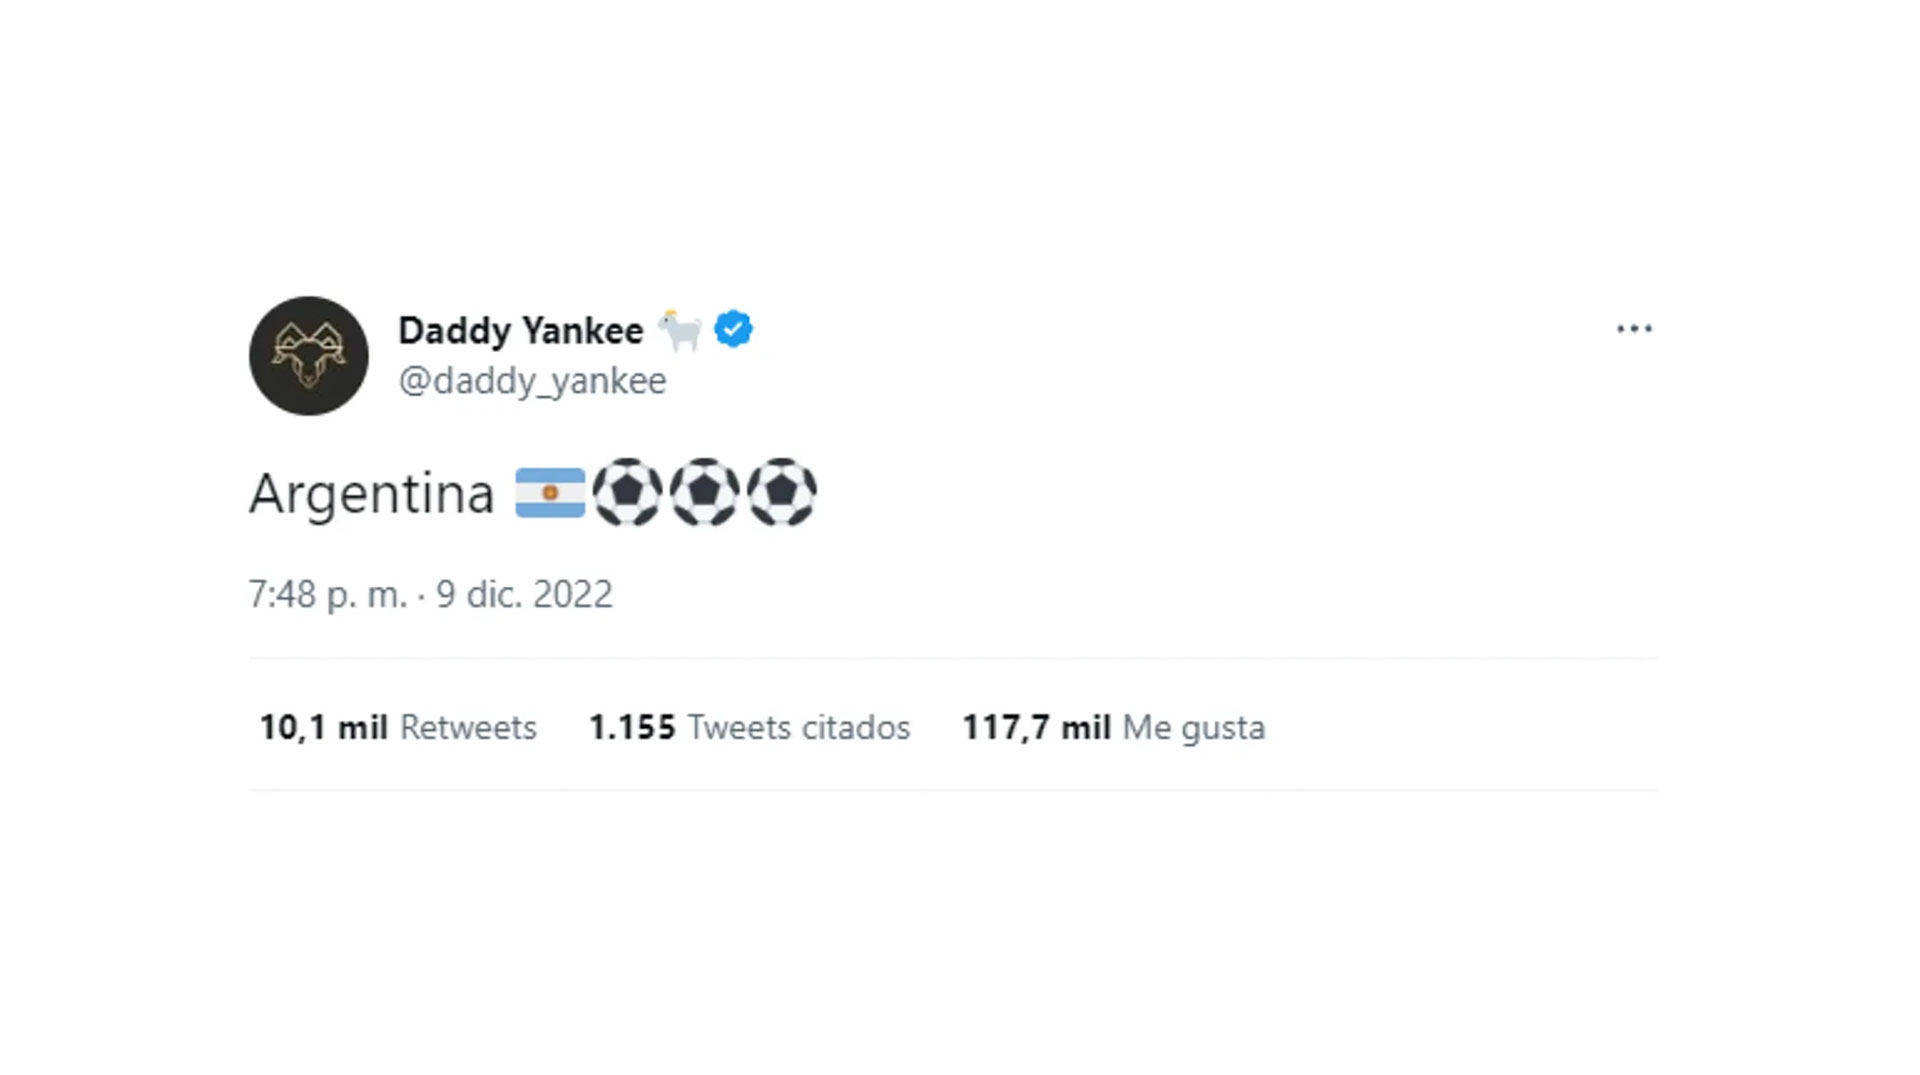 Tras alentar a la selección, Daddy Yankee decidió escribir en Twitter la palabra “Argentina” para que no quedaran dudas